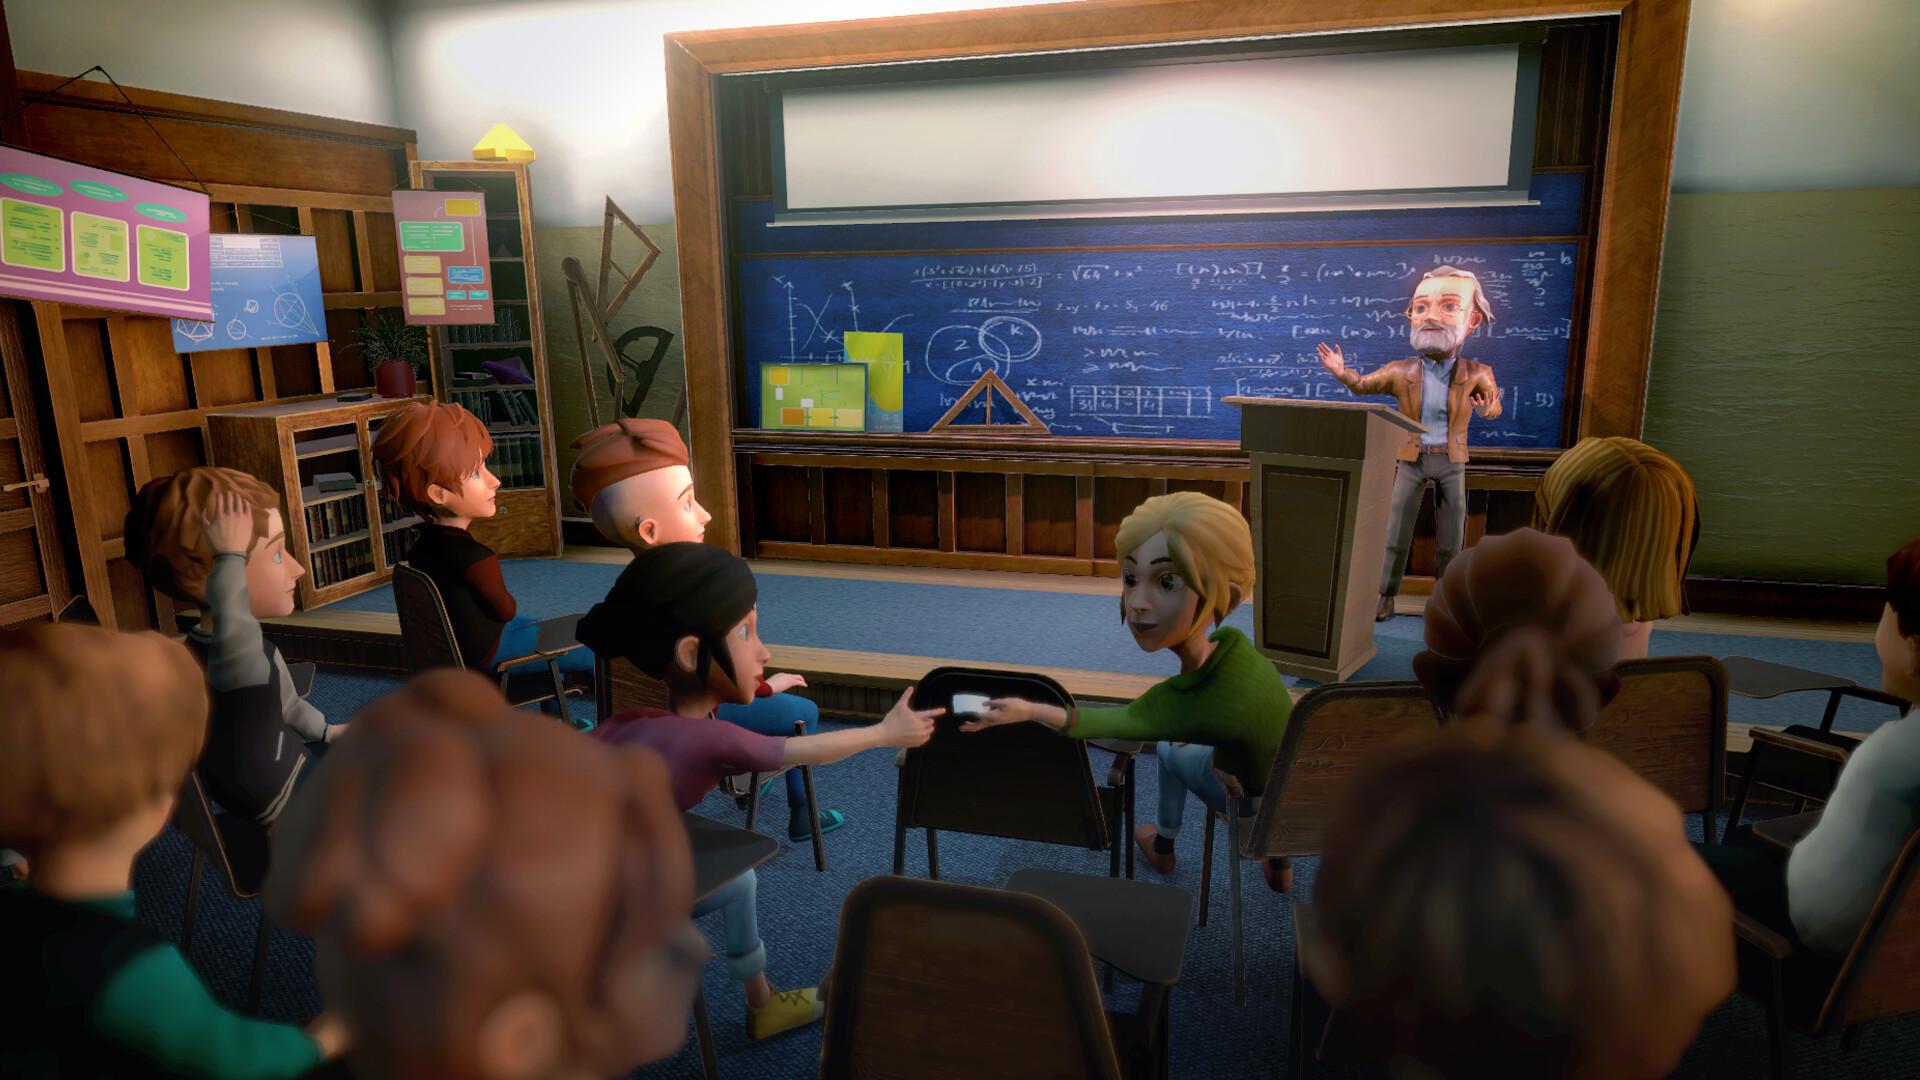 沉浸式模擬遊戲《校園生活》現已登錄Steam平台 6月推出試玩版